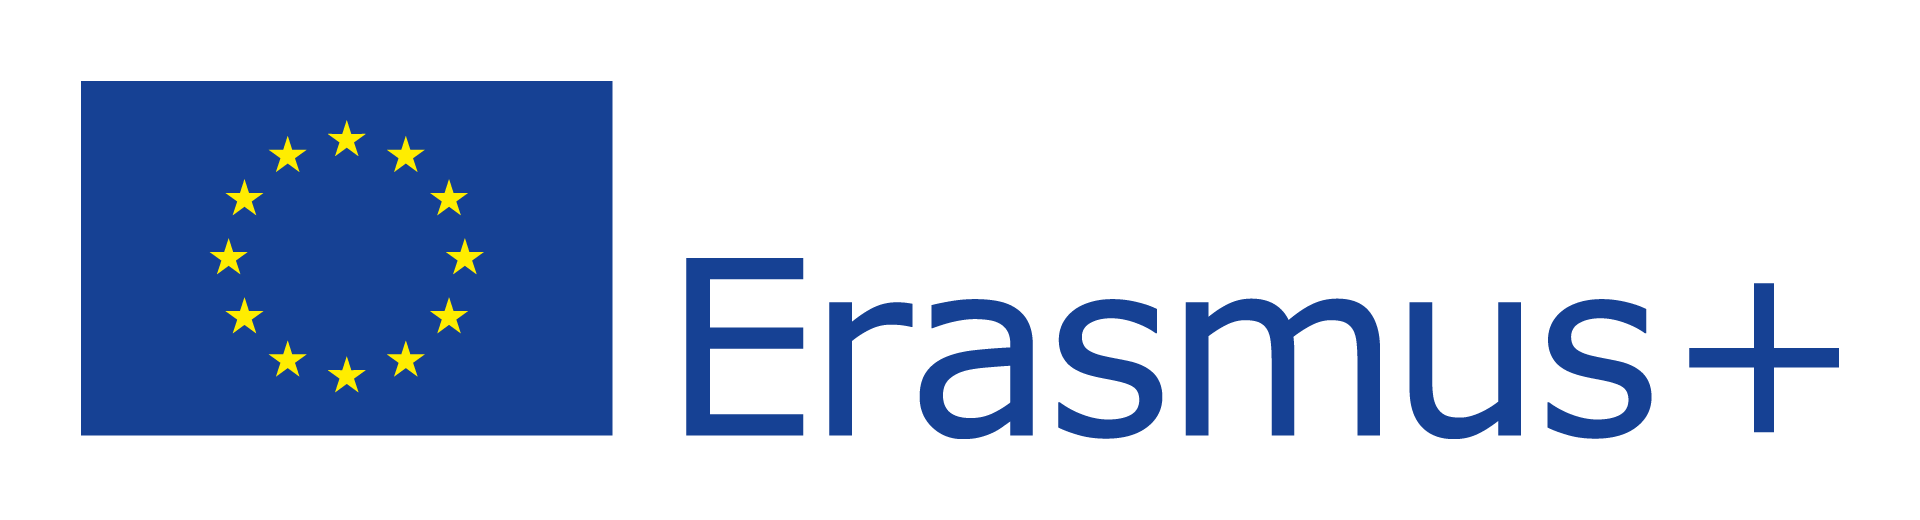 logotyp programu Erasmus+